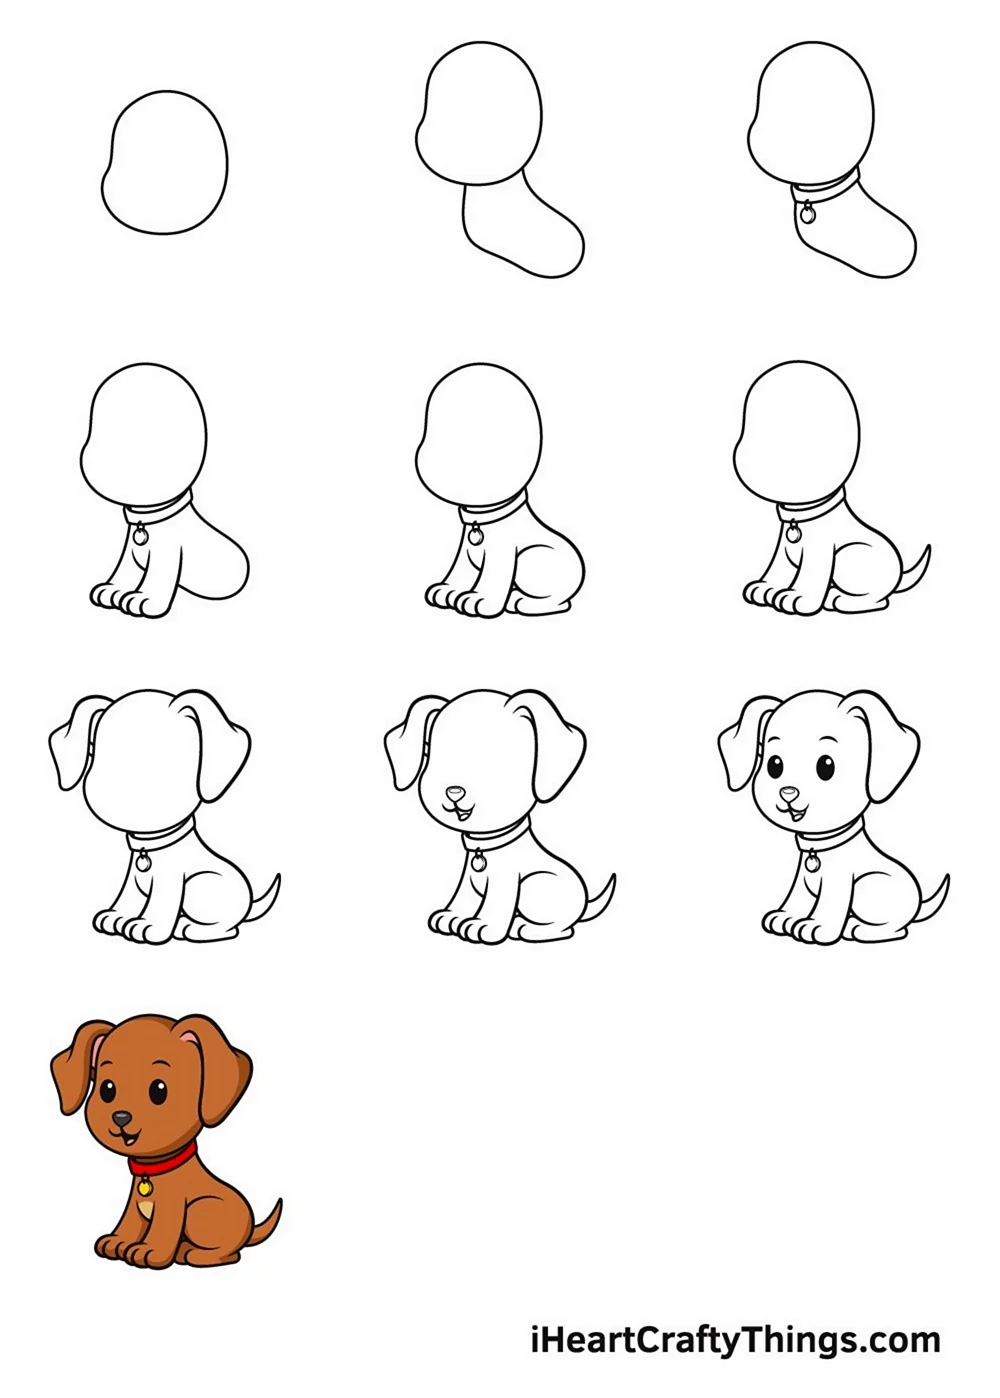 Схема рисования собаки для детей. Для срисовки